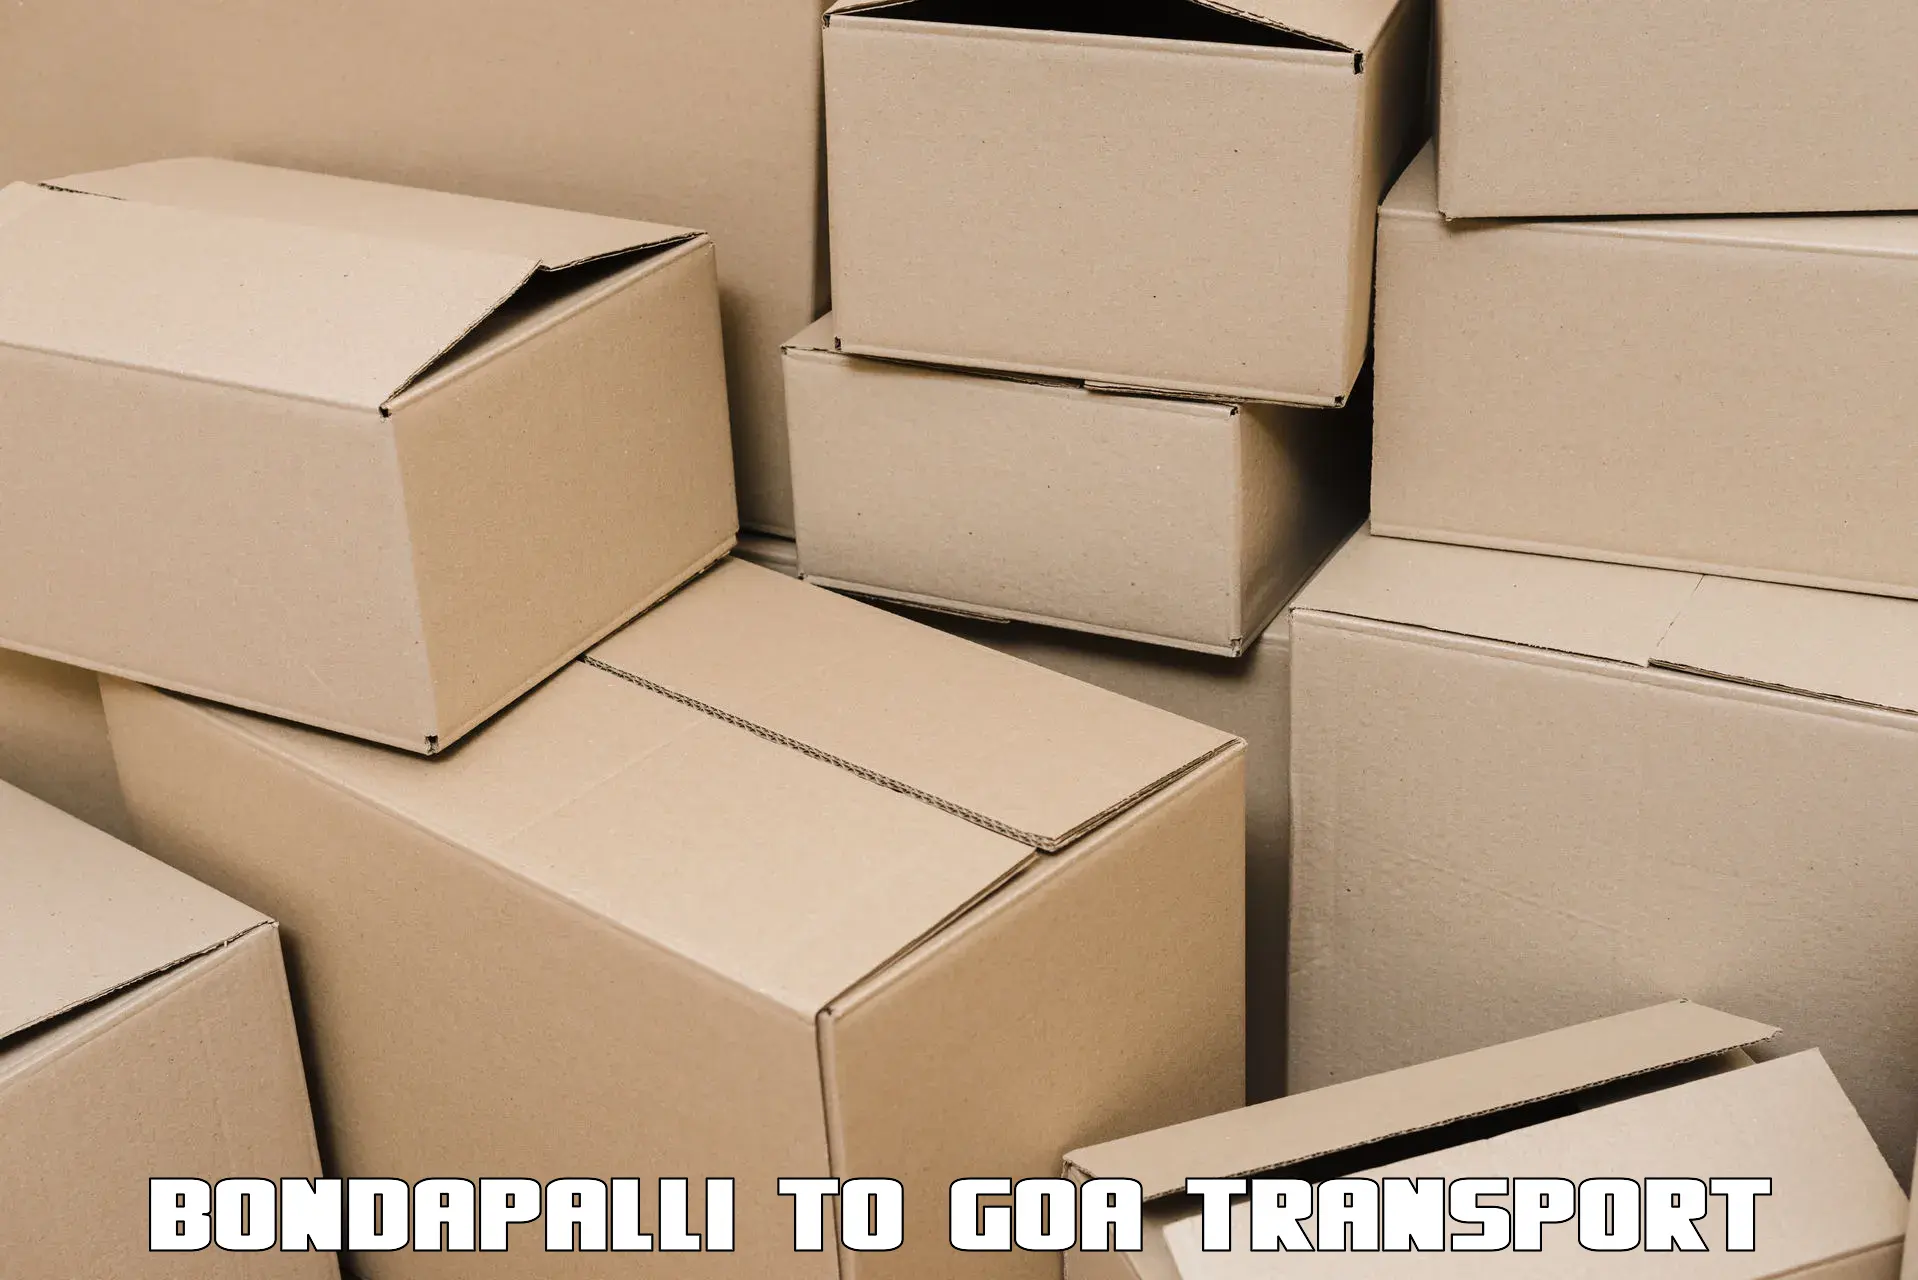 All India transport service Bondapalli to Canacona